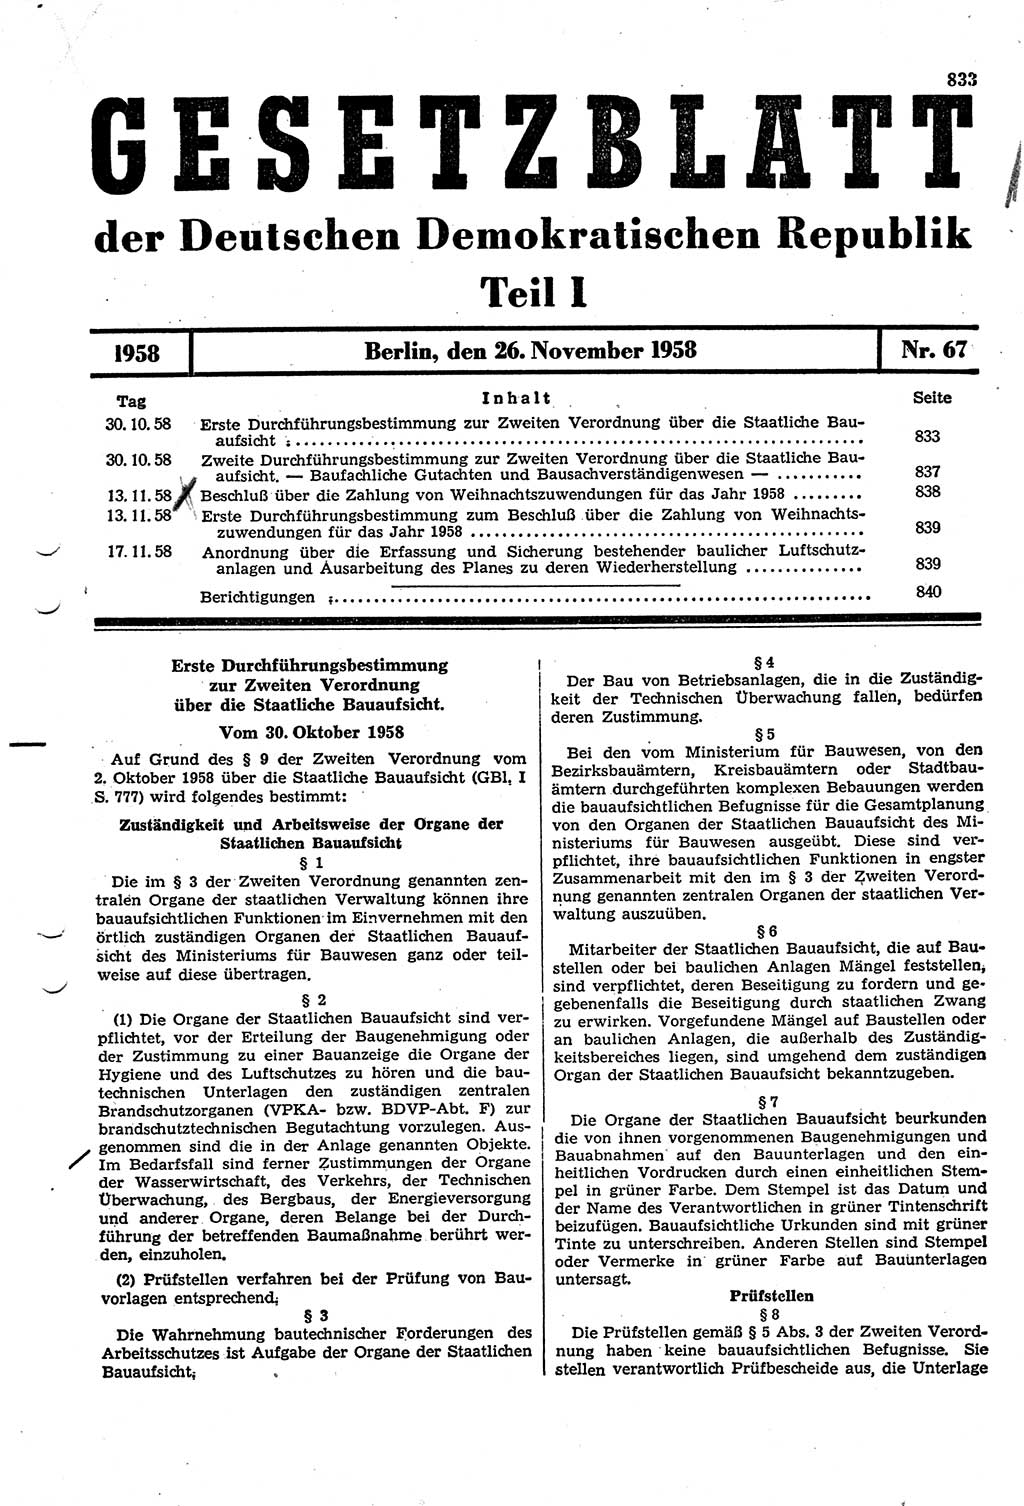 Gesetzblatt (GBl.) der Deutschen Demokratischen Republik (DDR) Teil Ⅰ 1958, Seite 833 (GBl. DDR Ⅰ 1958, S. 833)